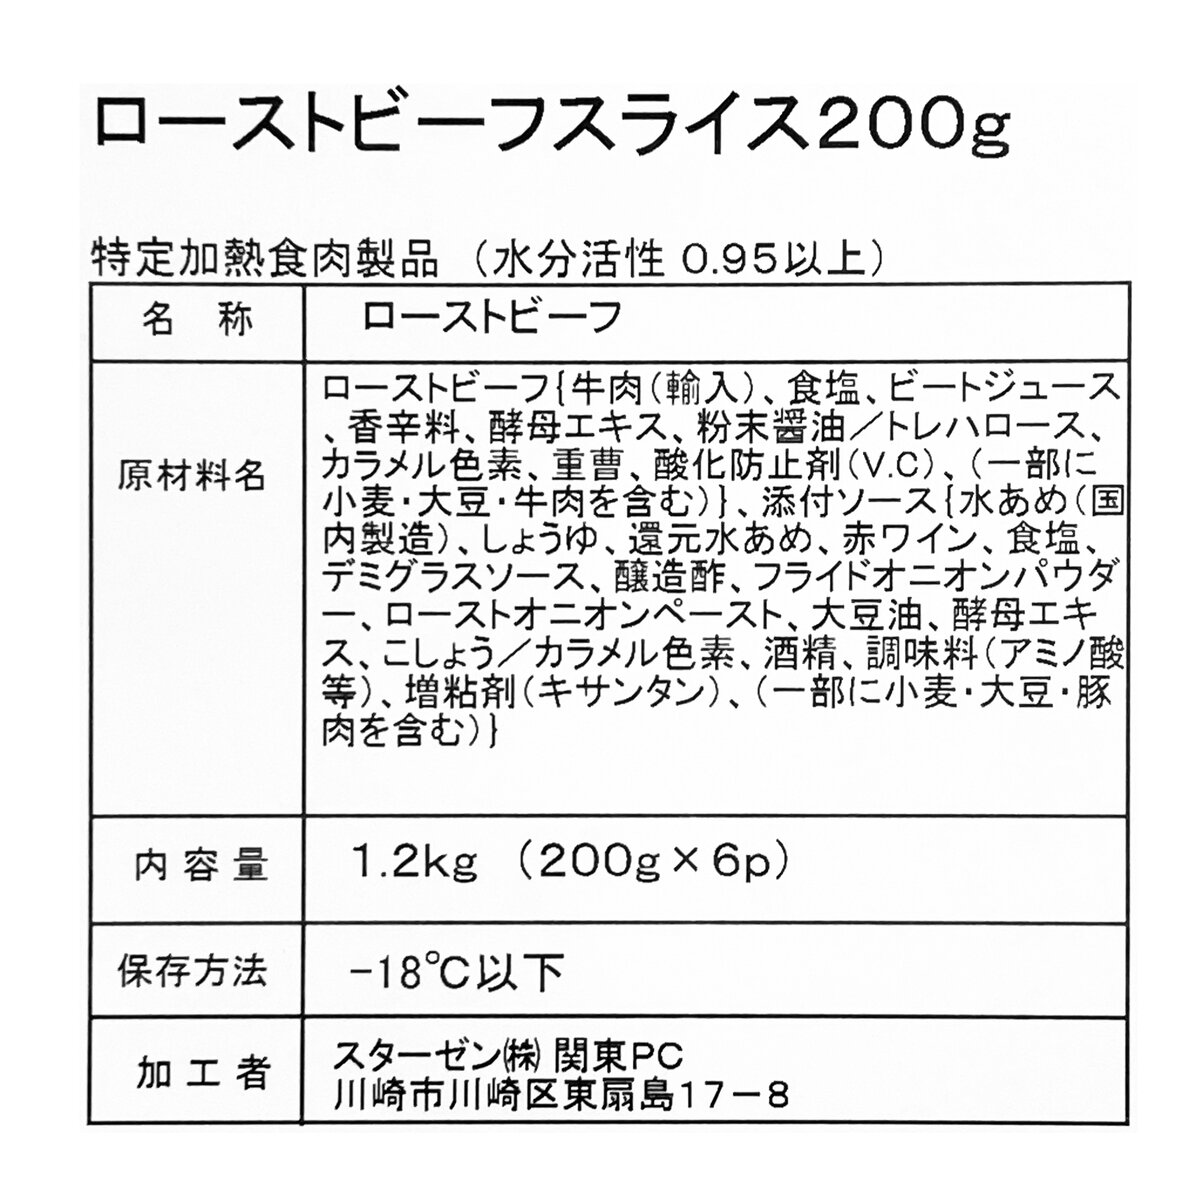 【冷凍】ローストビーフスライス 200g x 6パック